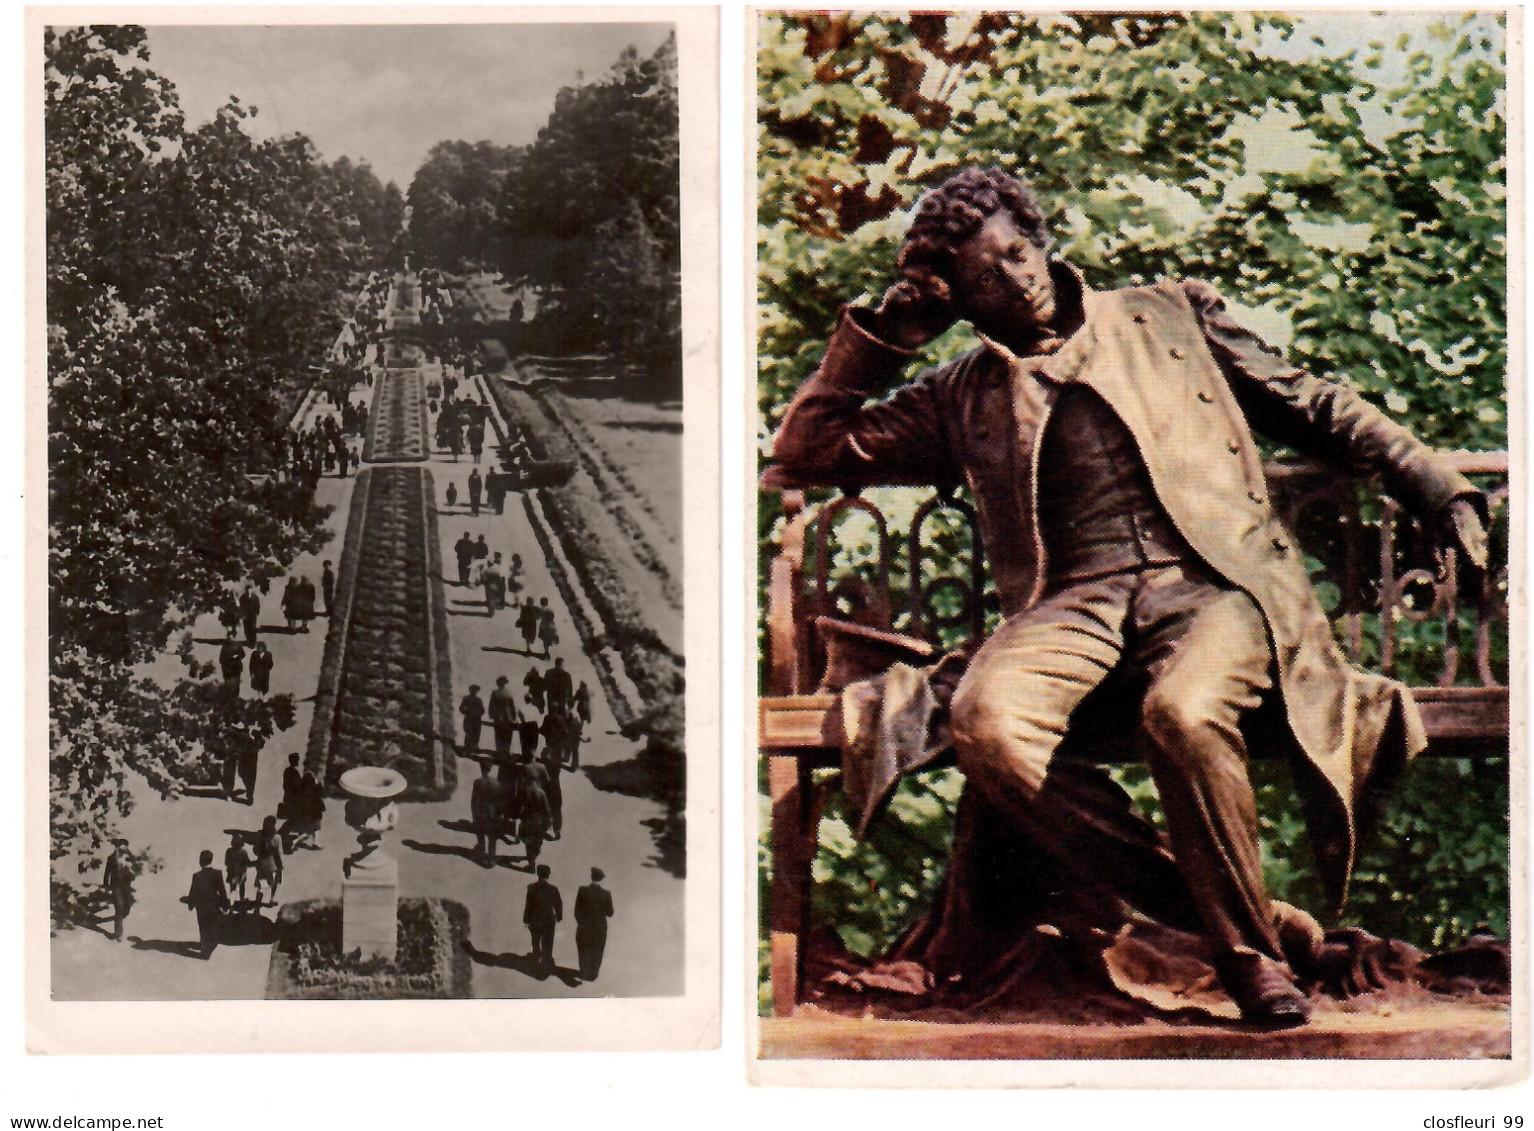 2 Cartes Postales Avec Censure Soviétique En 1951 / Pour Lausanne Suisse / Parc De Léningrad - Lettres & Documents